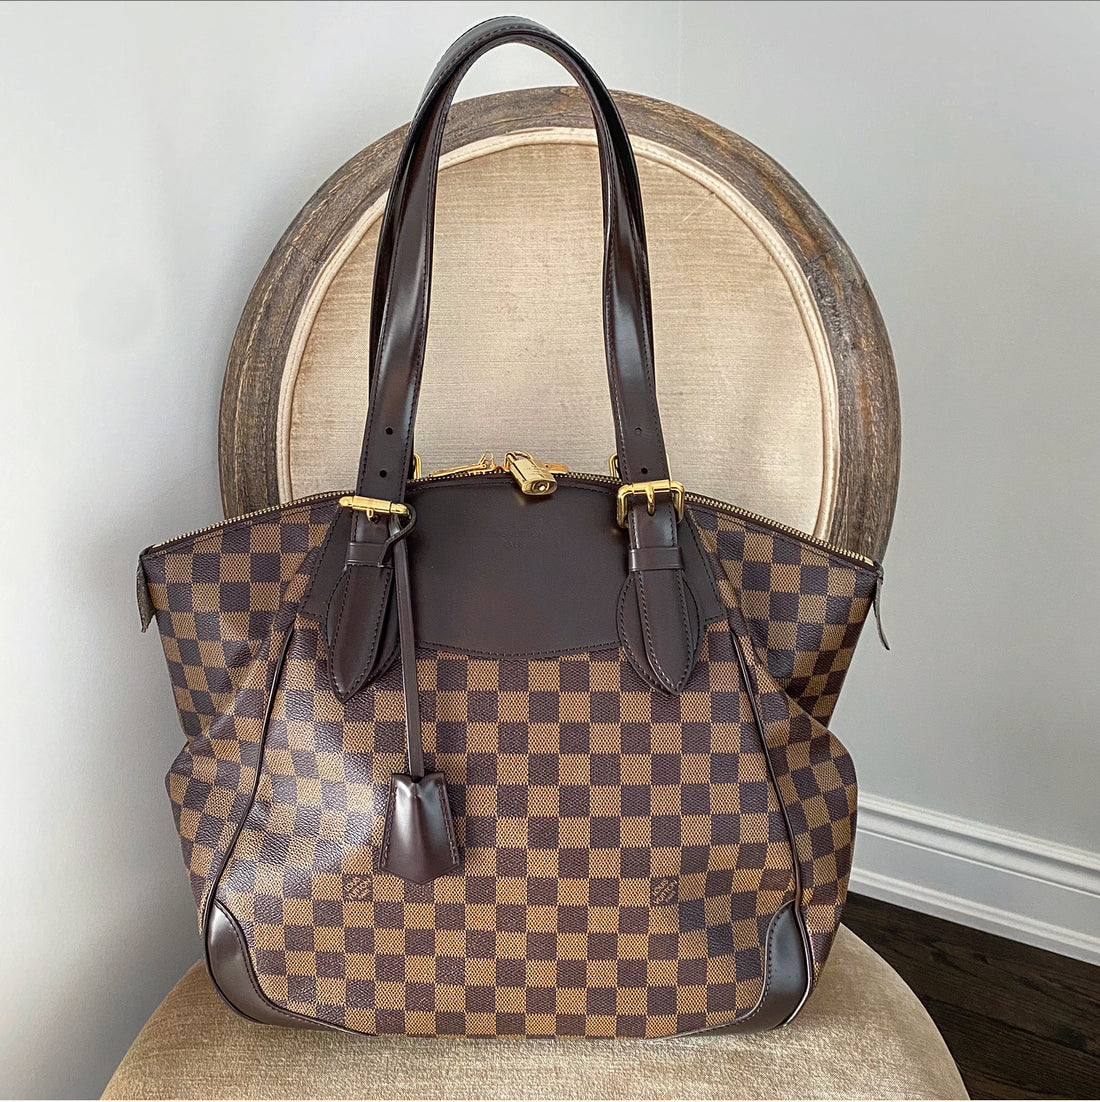 Louis Vuitton Damier Ebene Verona MM Shoulder Bag – I MISS YOU VINTAGE